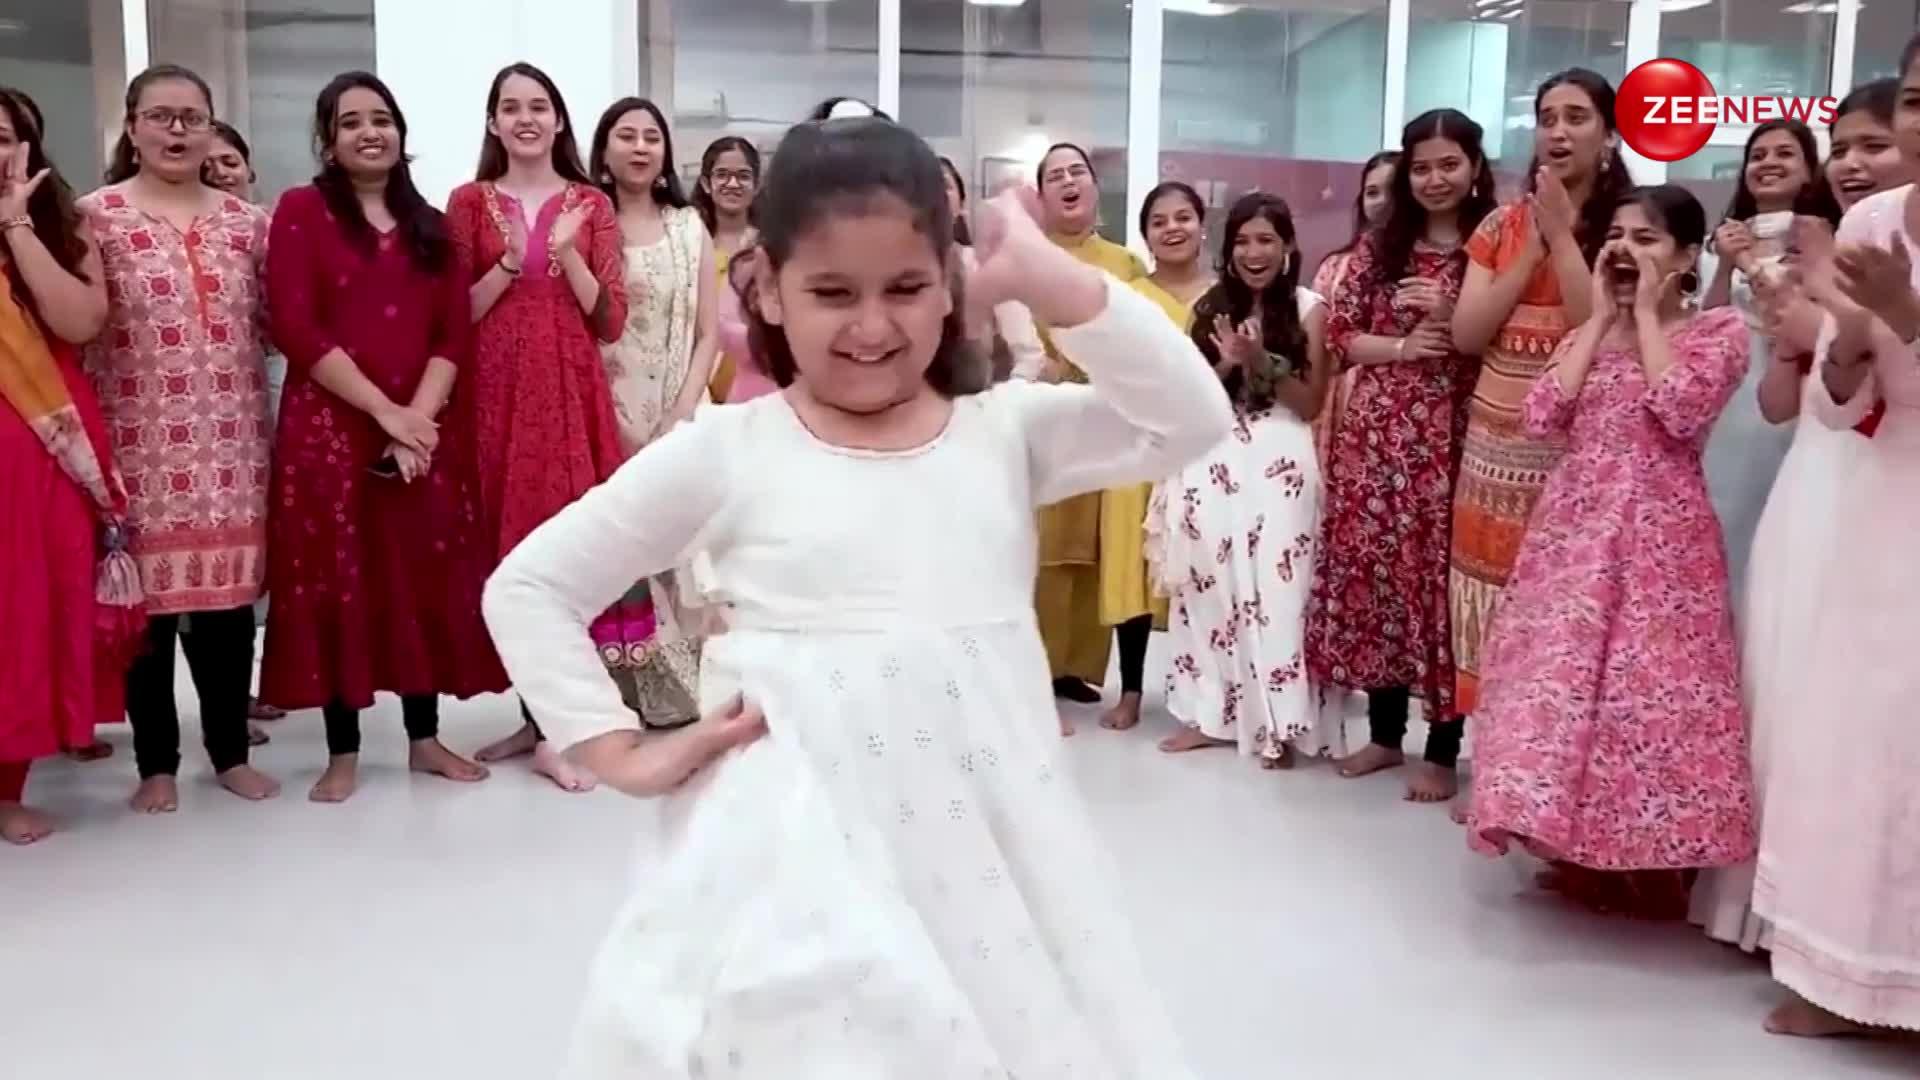 Aishwarya-Madhuri की जोड़ी को अकेली टक्कर दे रही है ये 10 साल की बच्ची, डोला रे डोला पर एक बार ये डांस देख लिया झूम जाएंगे